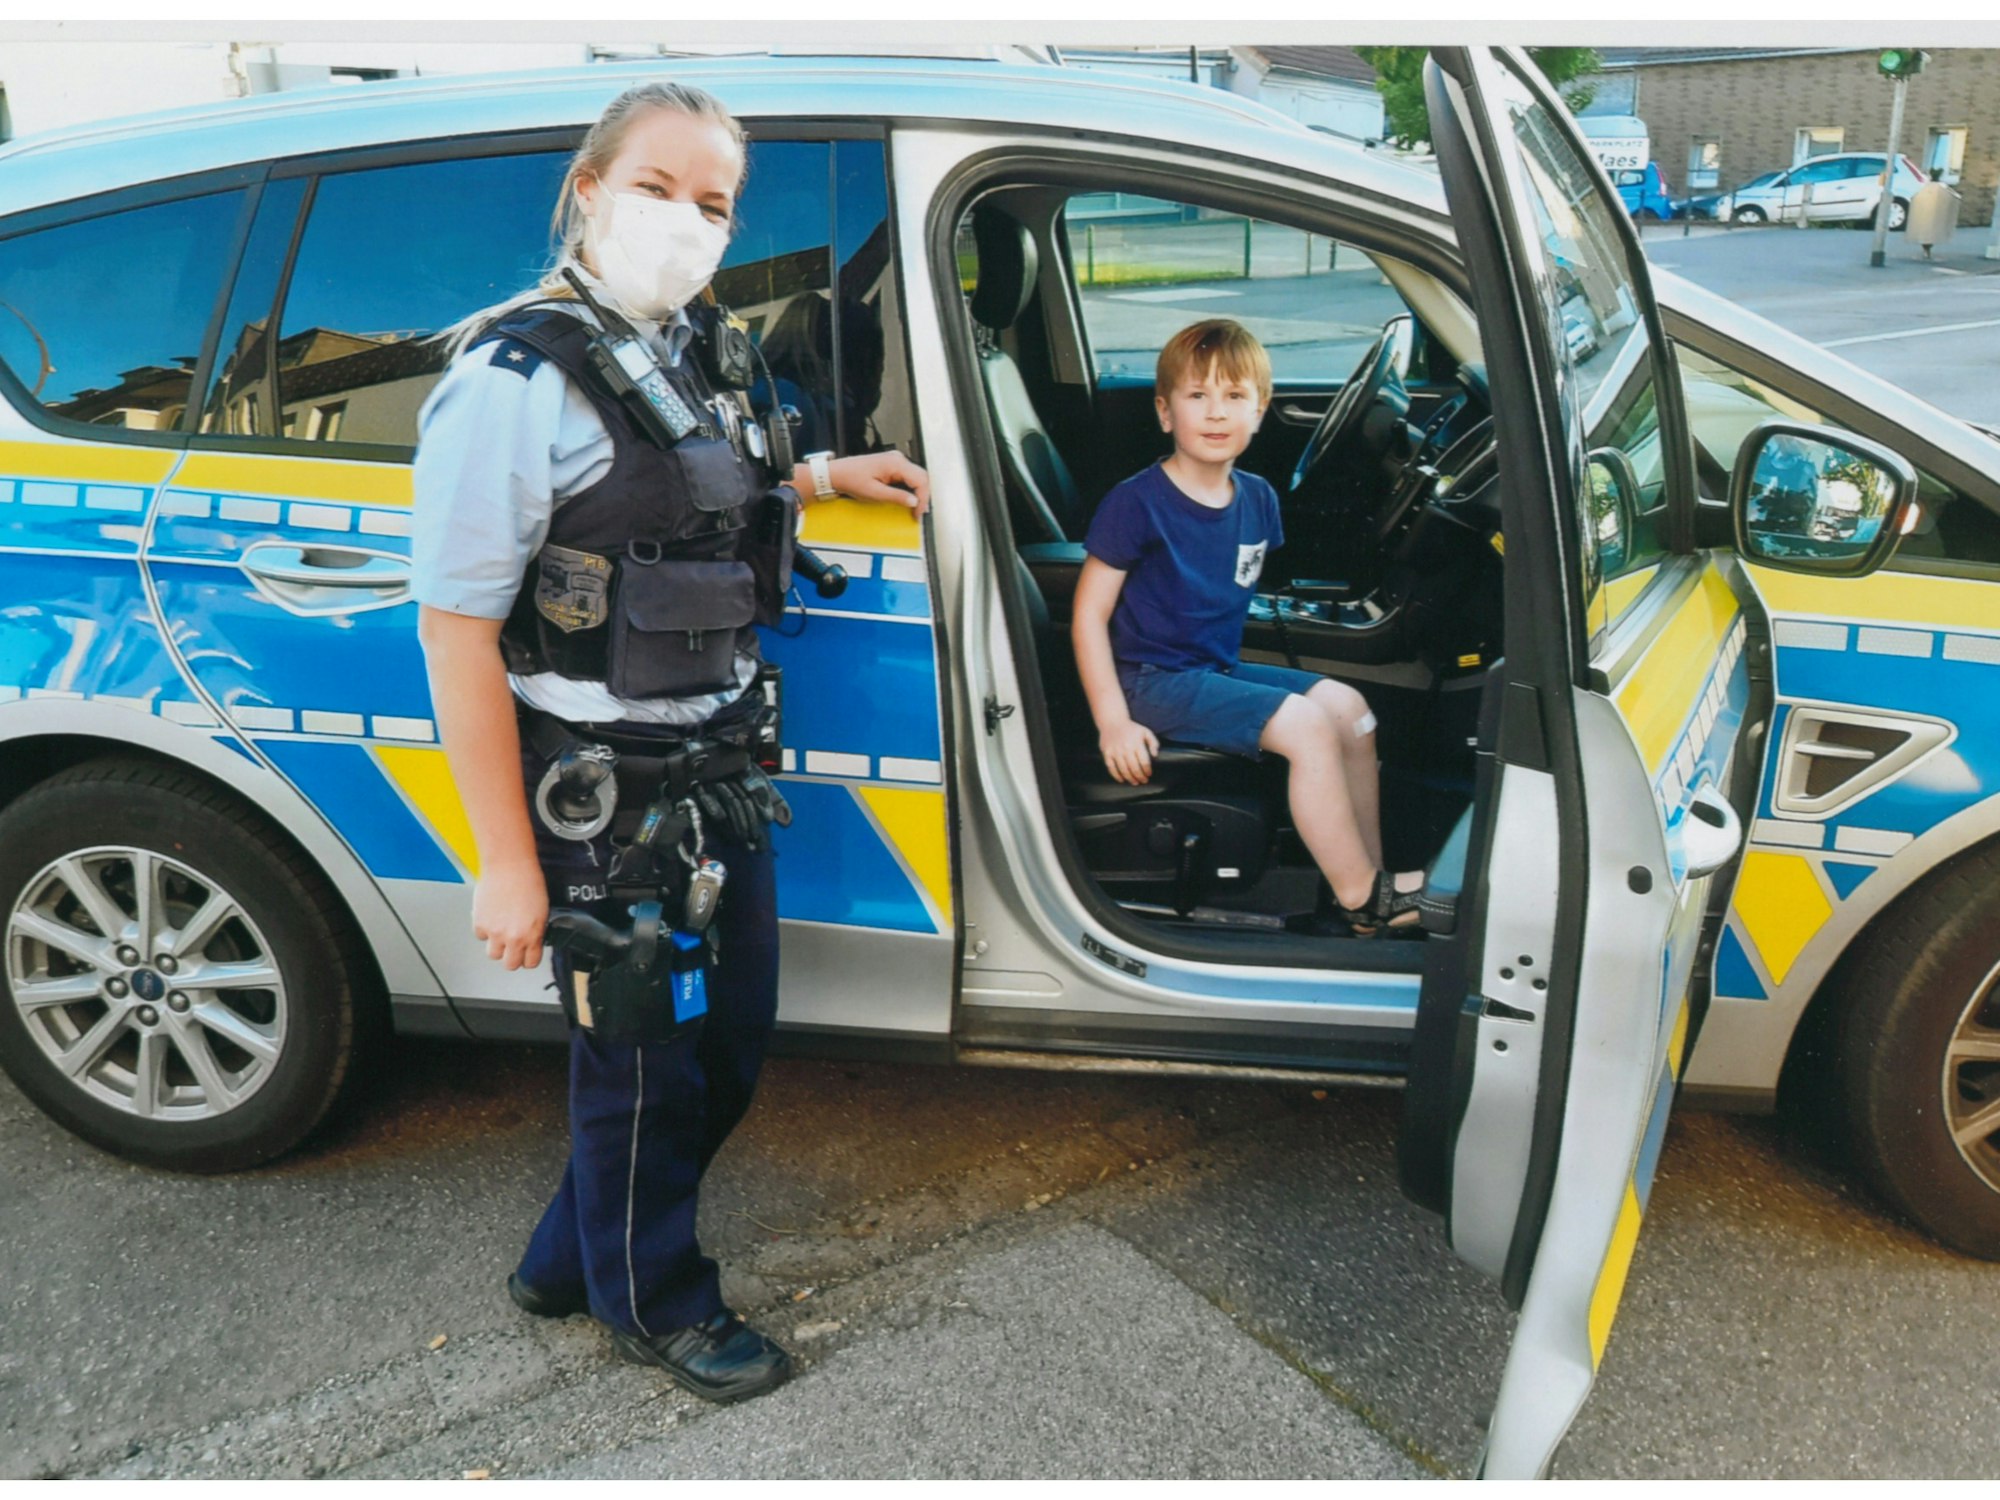 Klaas (5) aus Köln hat auf dem Beifahrersitz des Streifenwagens Platz genommen. Polizistin Lynn steht daneben.